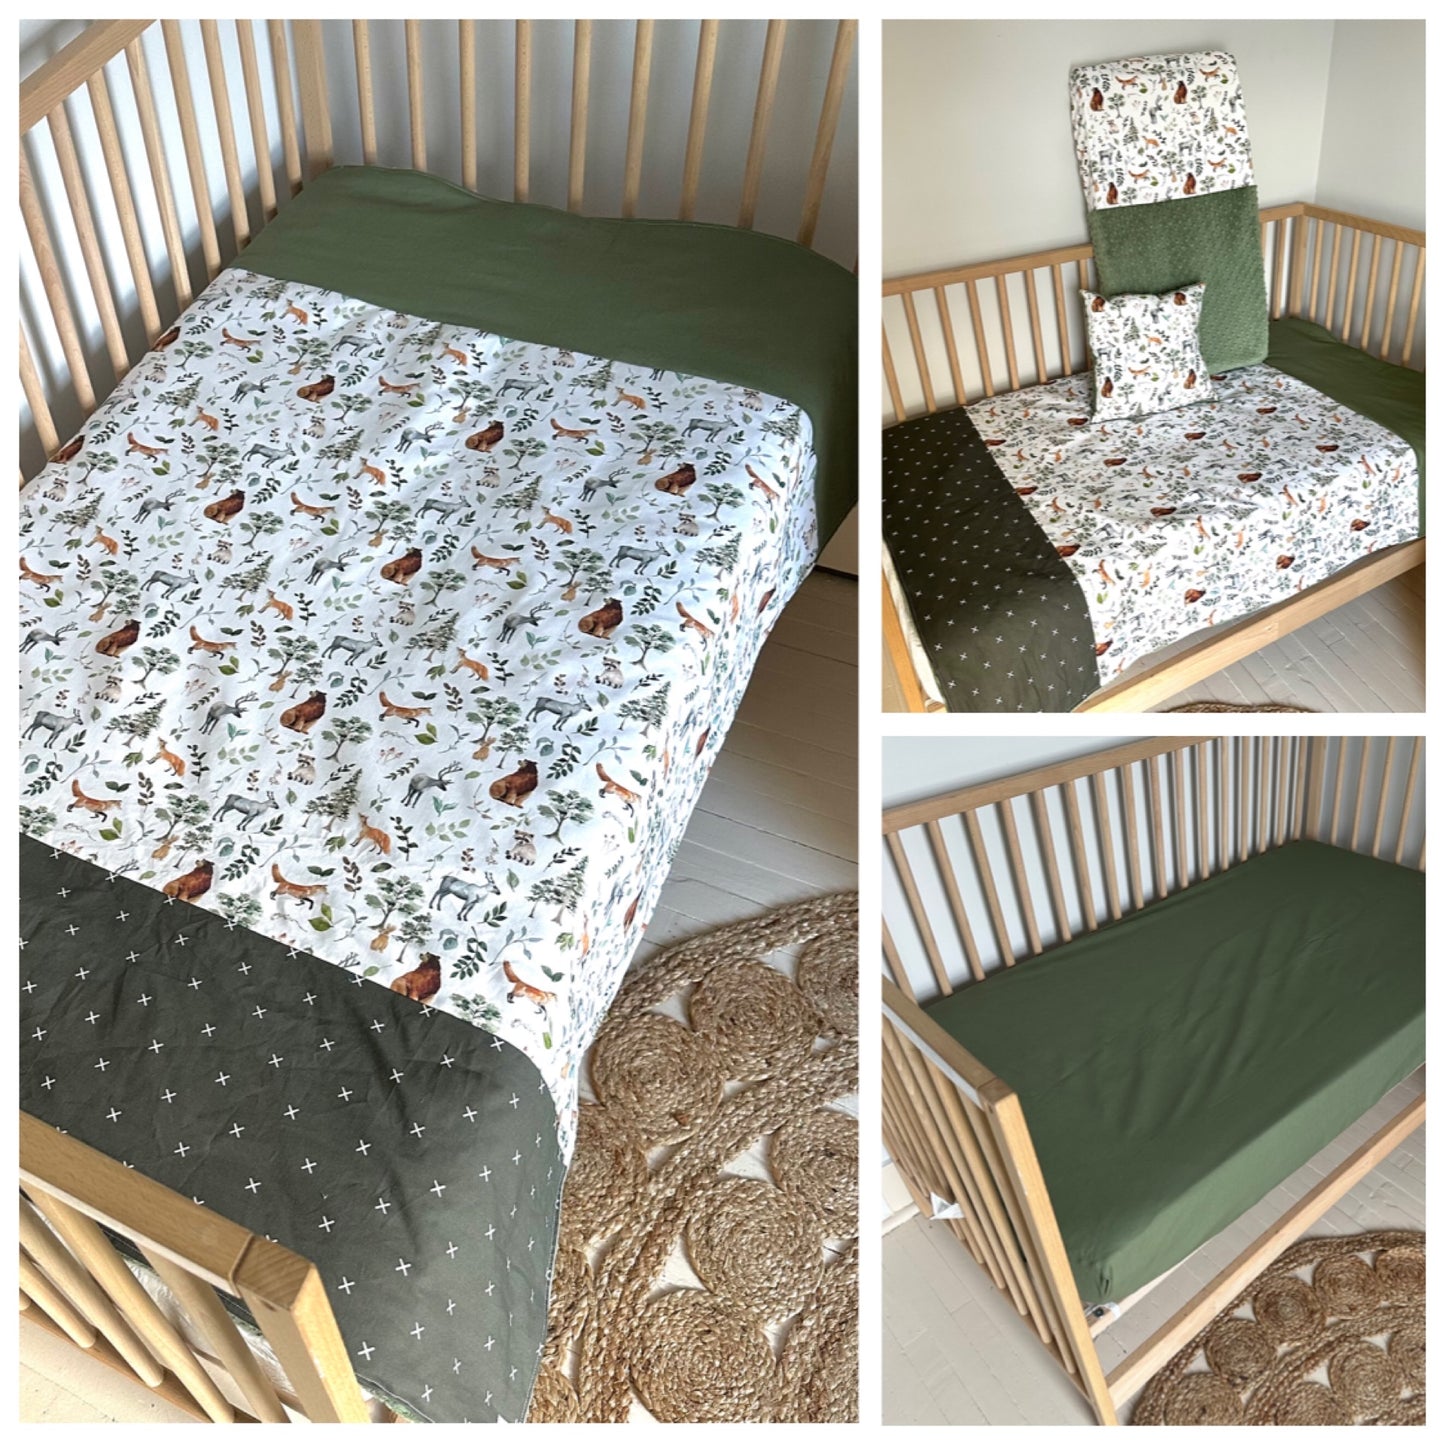 Couverture lit de bébé , pour couchette ou lit de transition en 3 bandes.